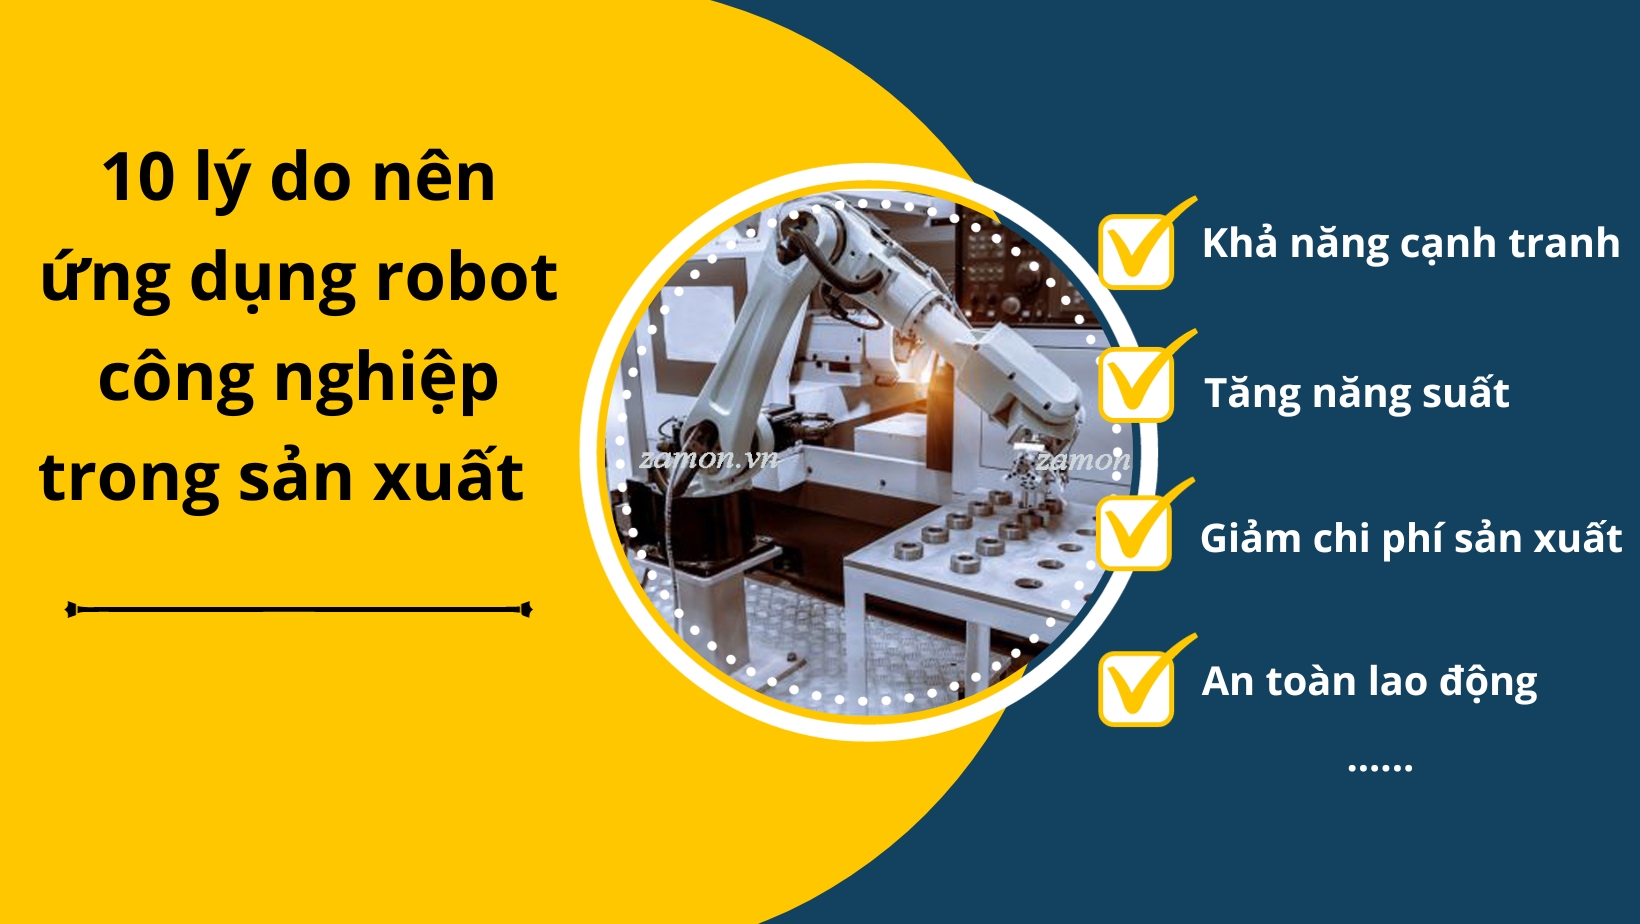 10 lý do nên ứng dụng robot công nghiệp trong sản xuất